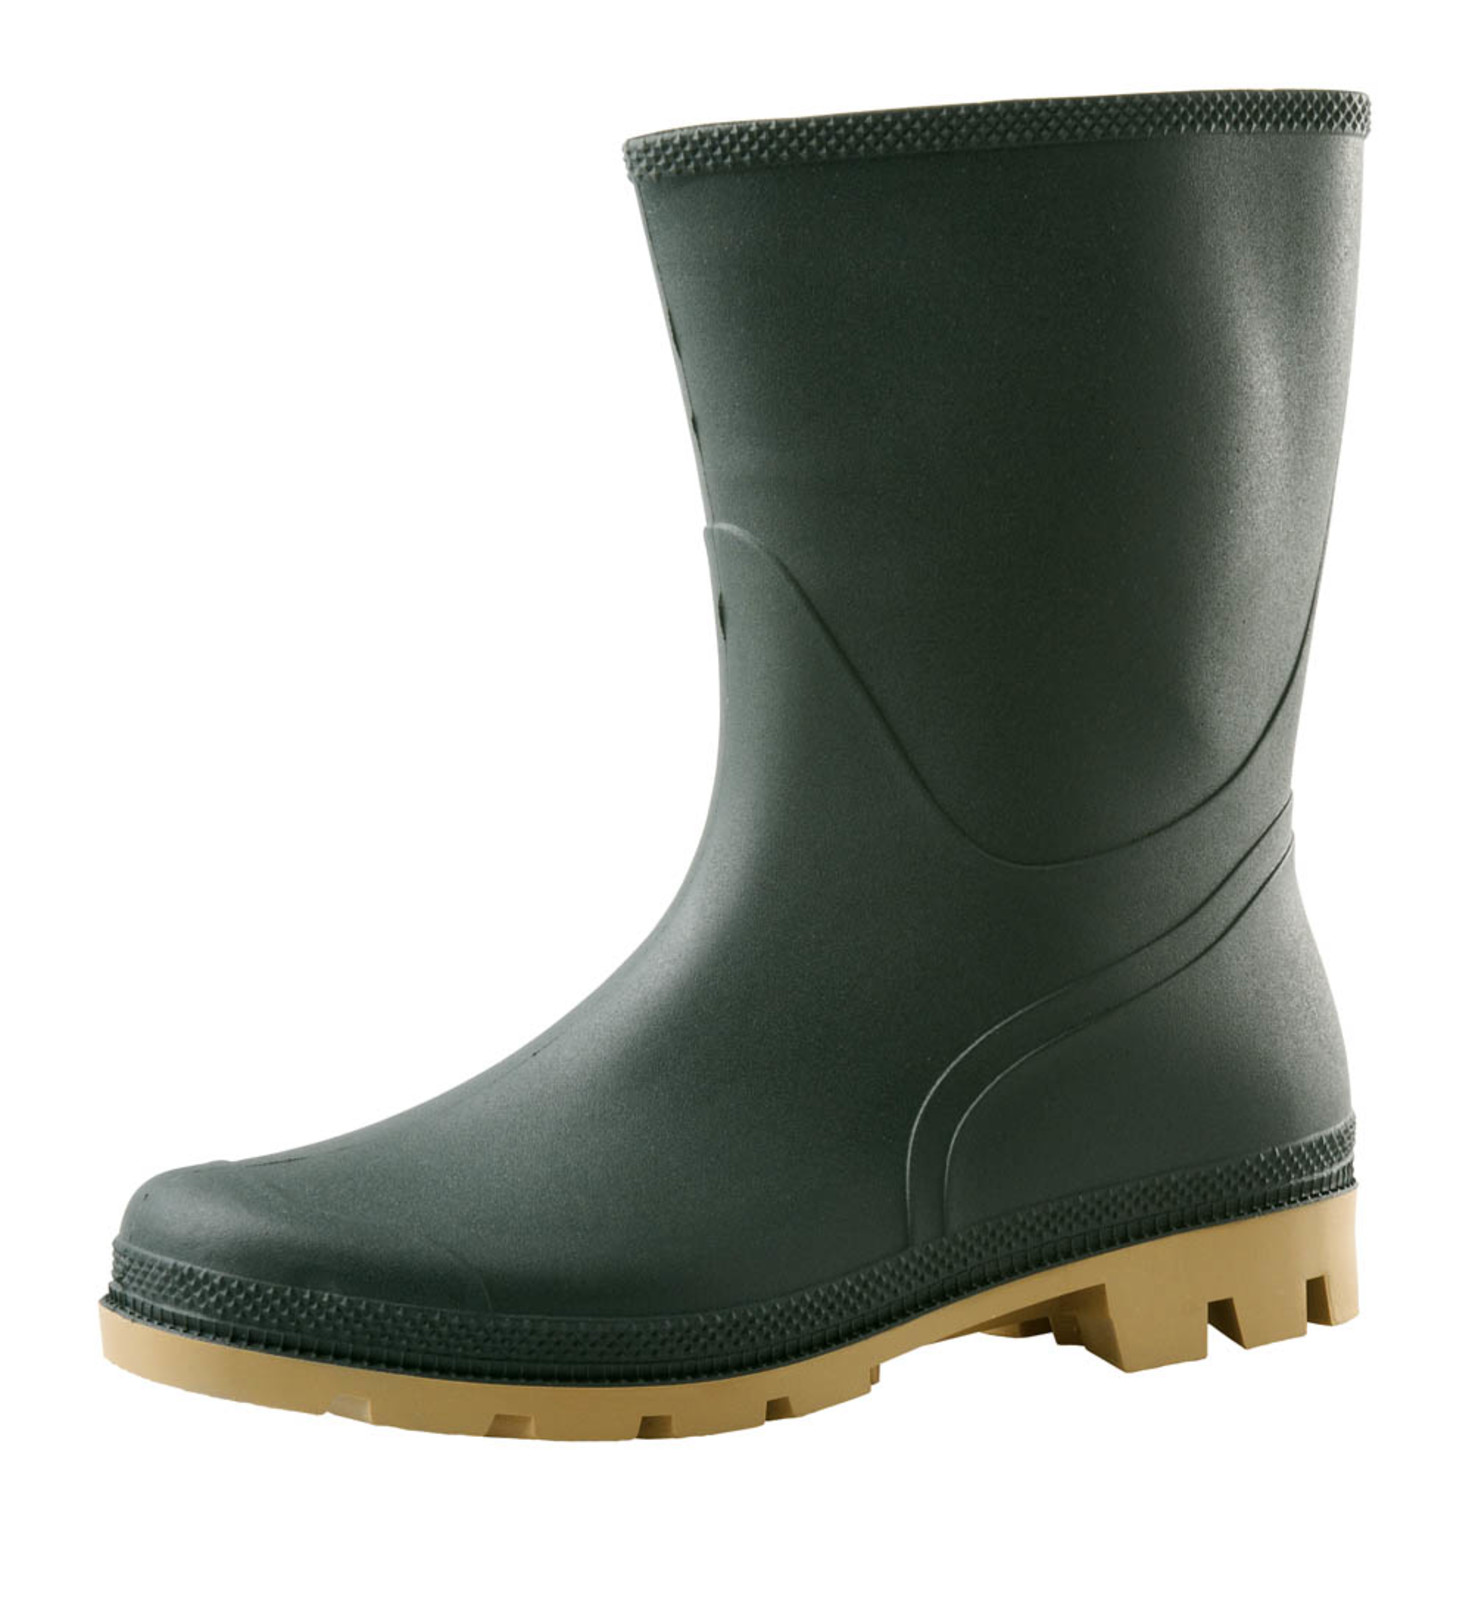 Gumáky Boots Troncheto PVC nízke - veľkosť: 43, farba: zelená